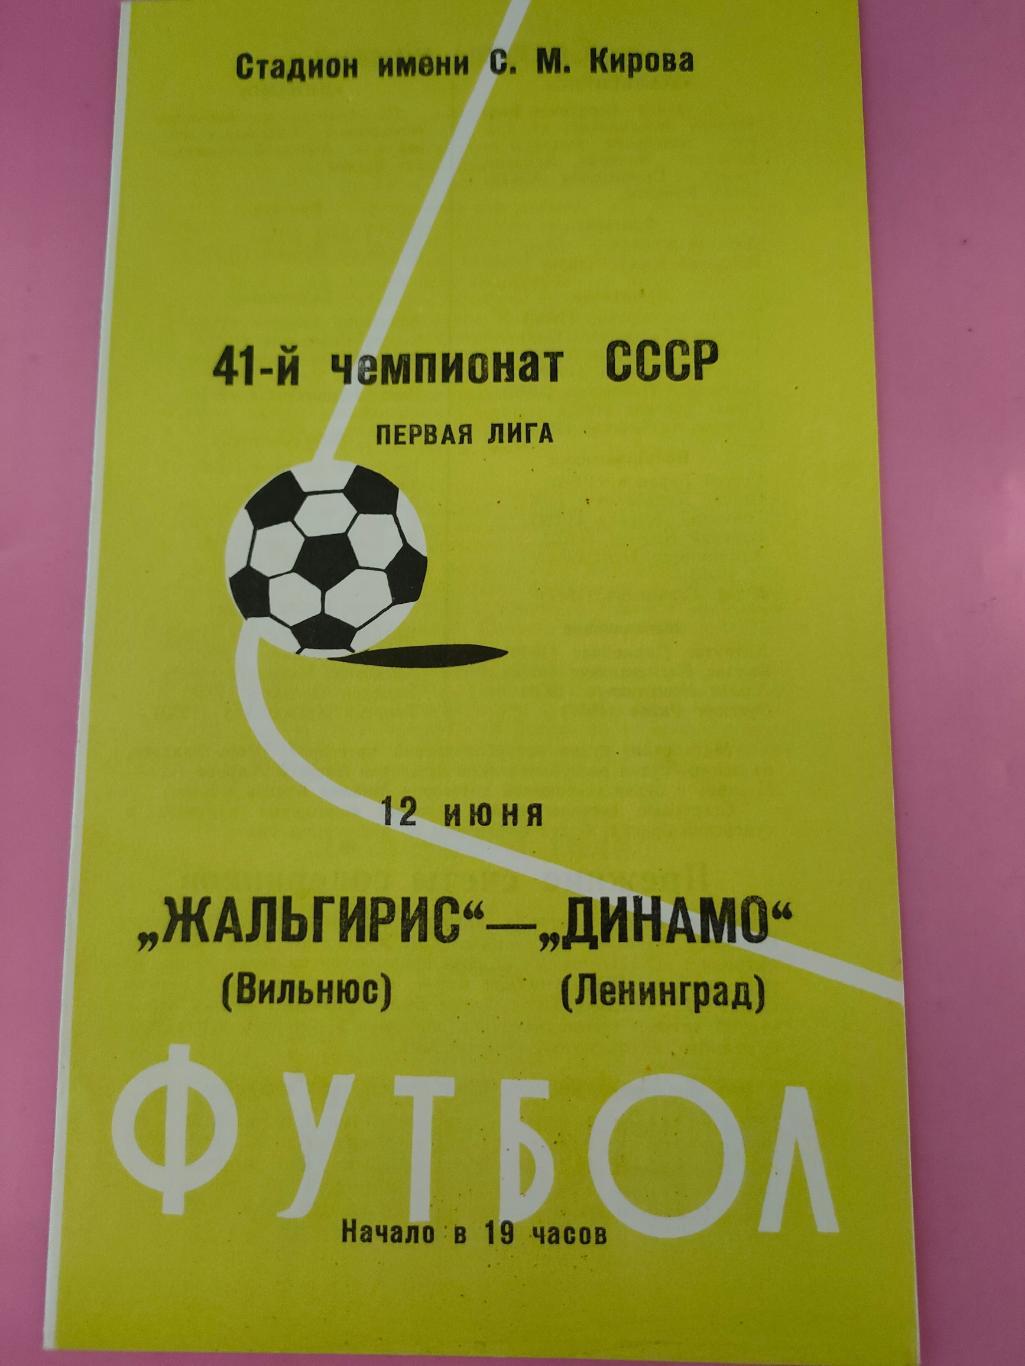 12.06.1978 - Динамо (Ленинград) - Жальгирис (Вильнюс)